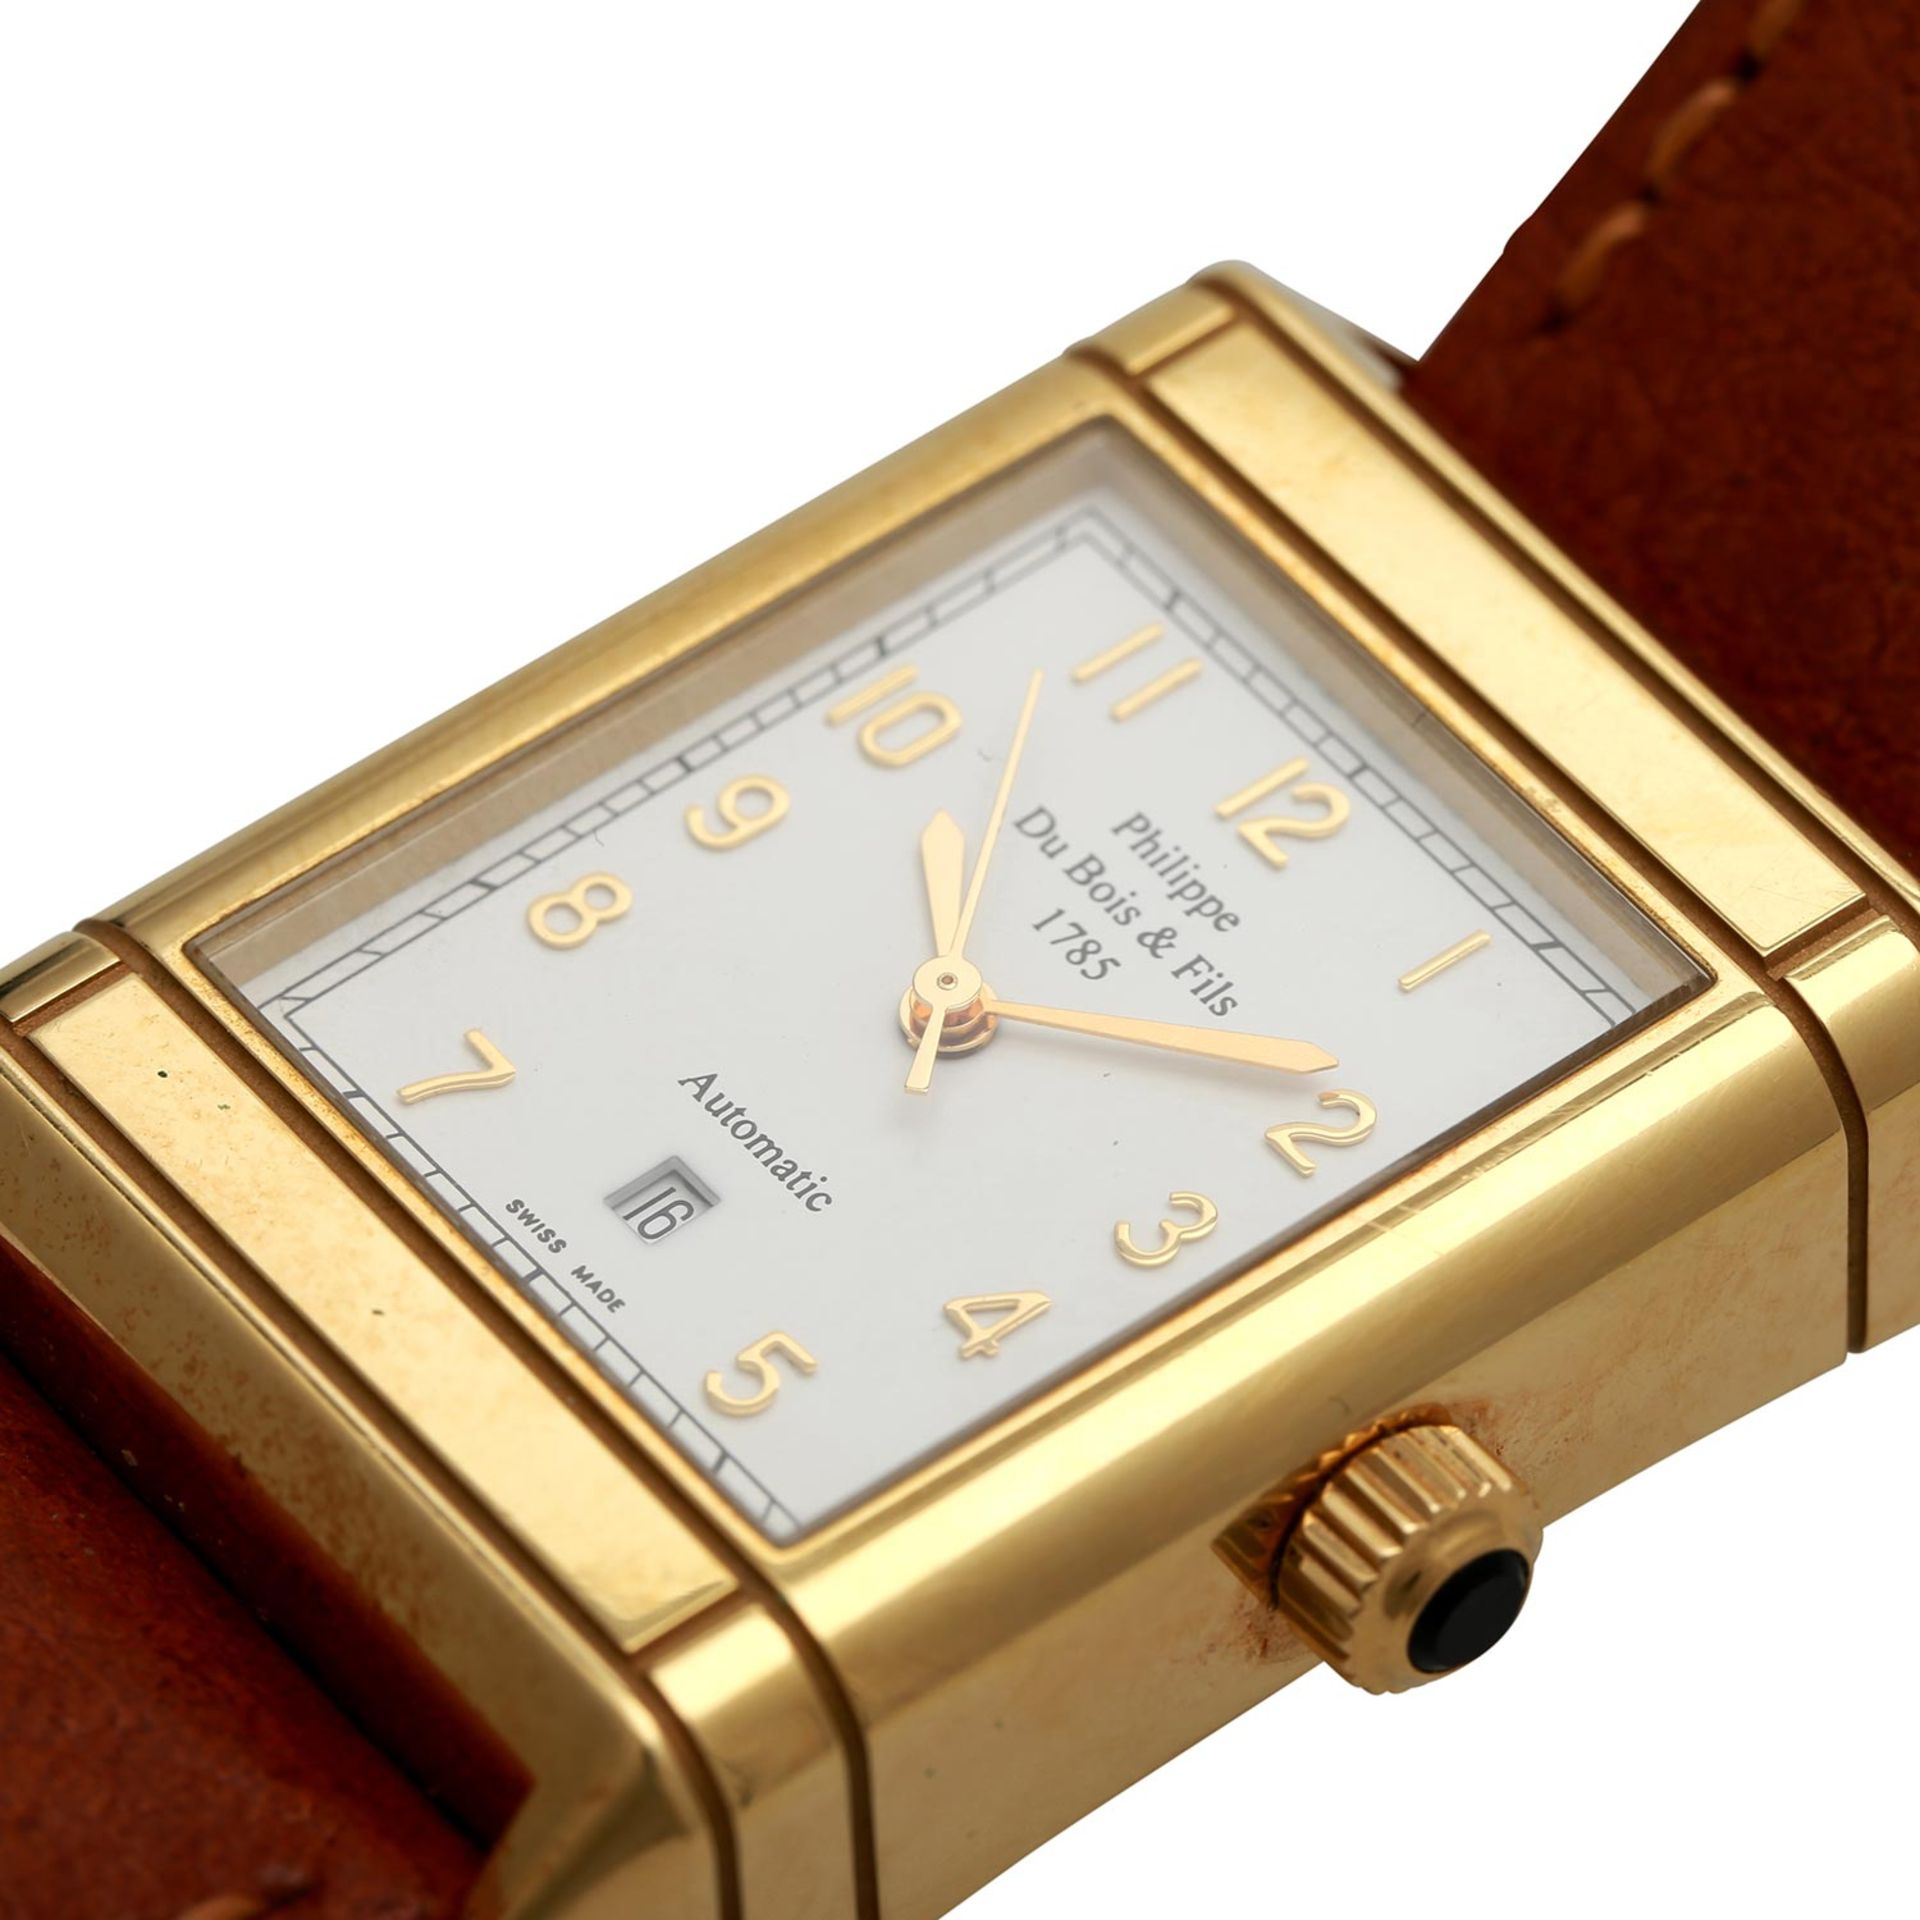 PHILIPPE DU BOIS & FILS Armbanduhr, Gehäuse Gold 18K.Automatic-Werk. Lederband mit goldplattierter - Bild 5 aus 5